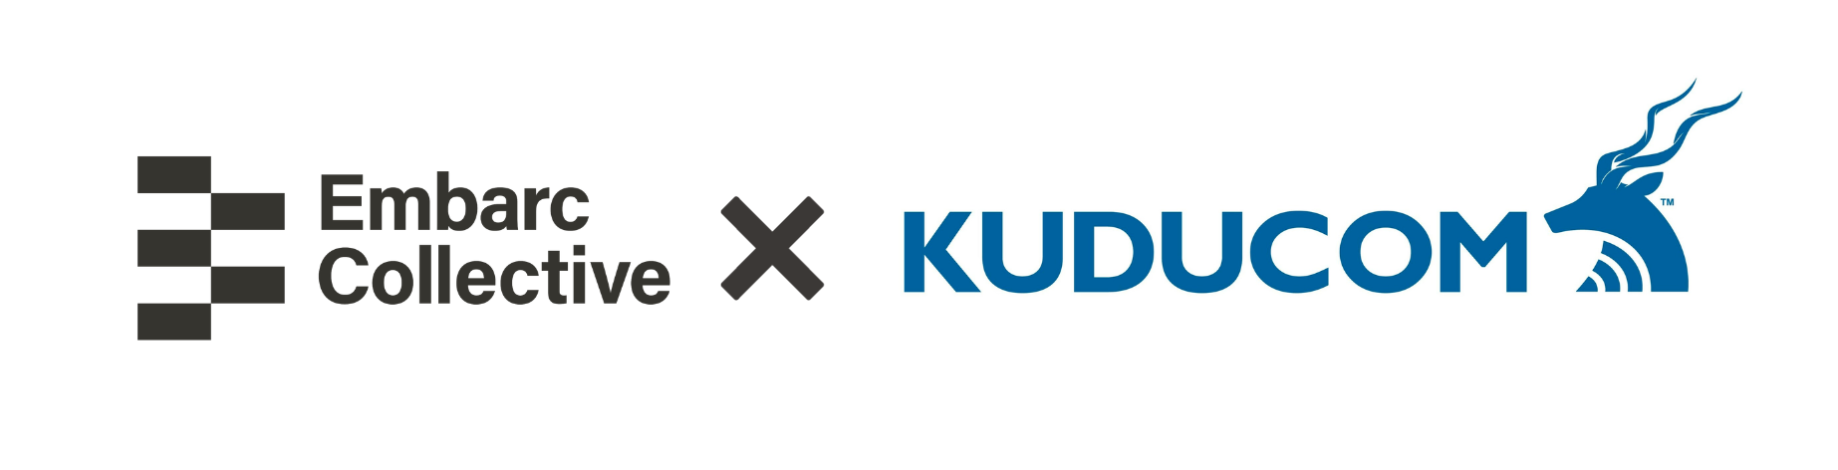 KUDUCOM Supports Tampa Bay Technology Startups